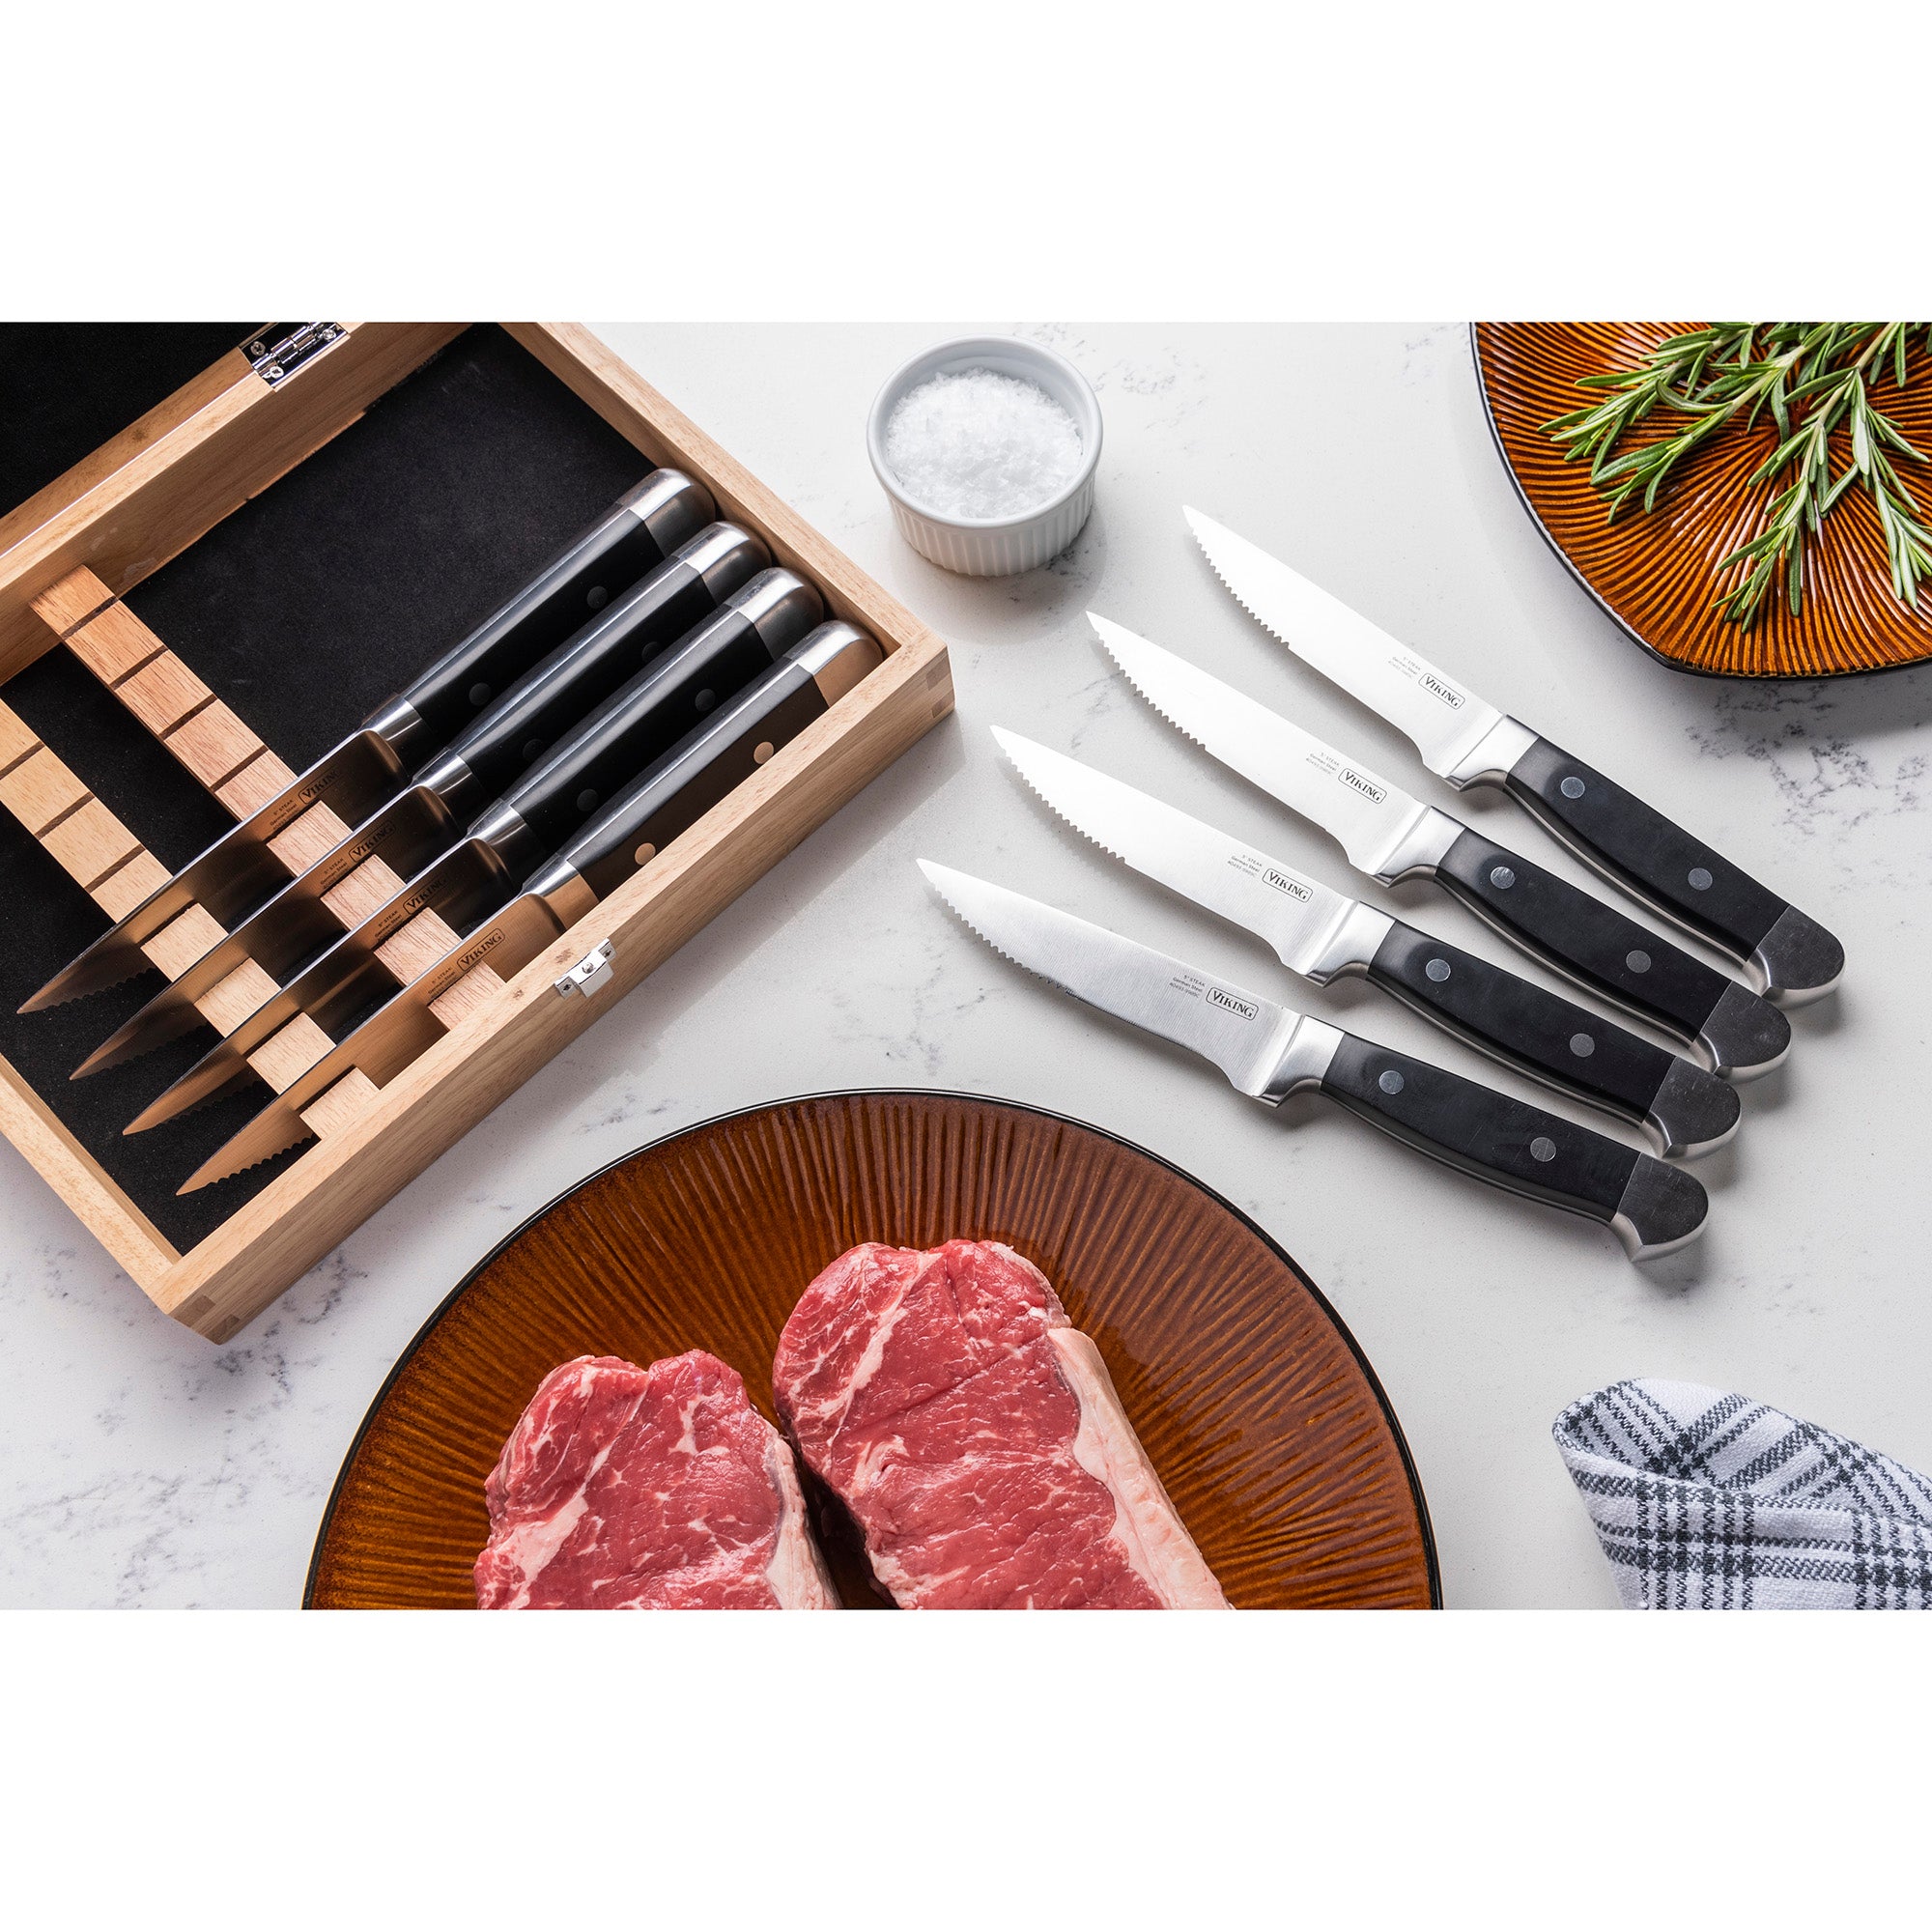 Coated Steak Knife Set - Shop